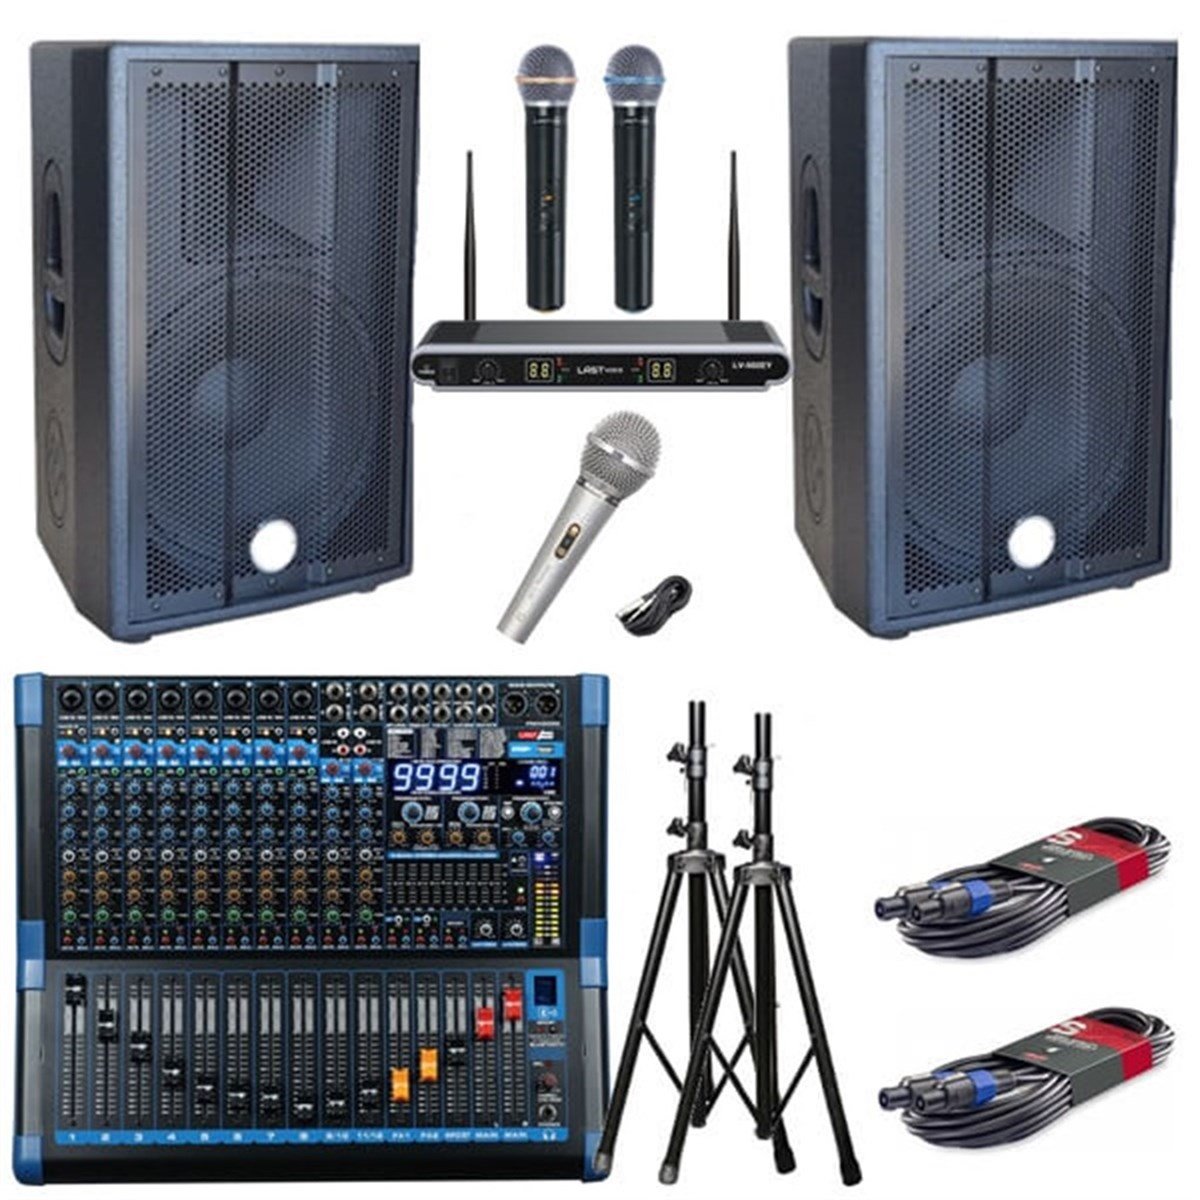 Lastvoice Düğün Ses Sistemi Pro Paket-1 Fiyatı Ve Özellikleri